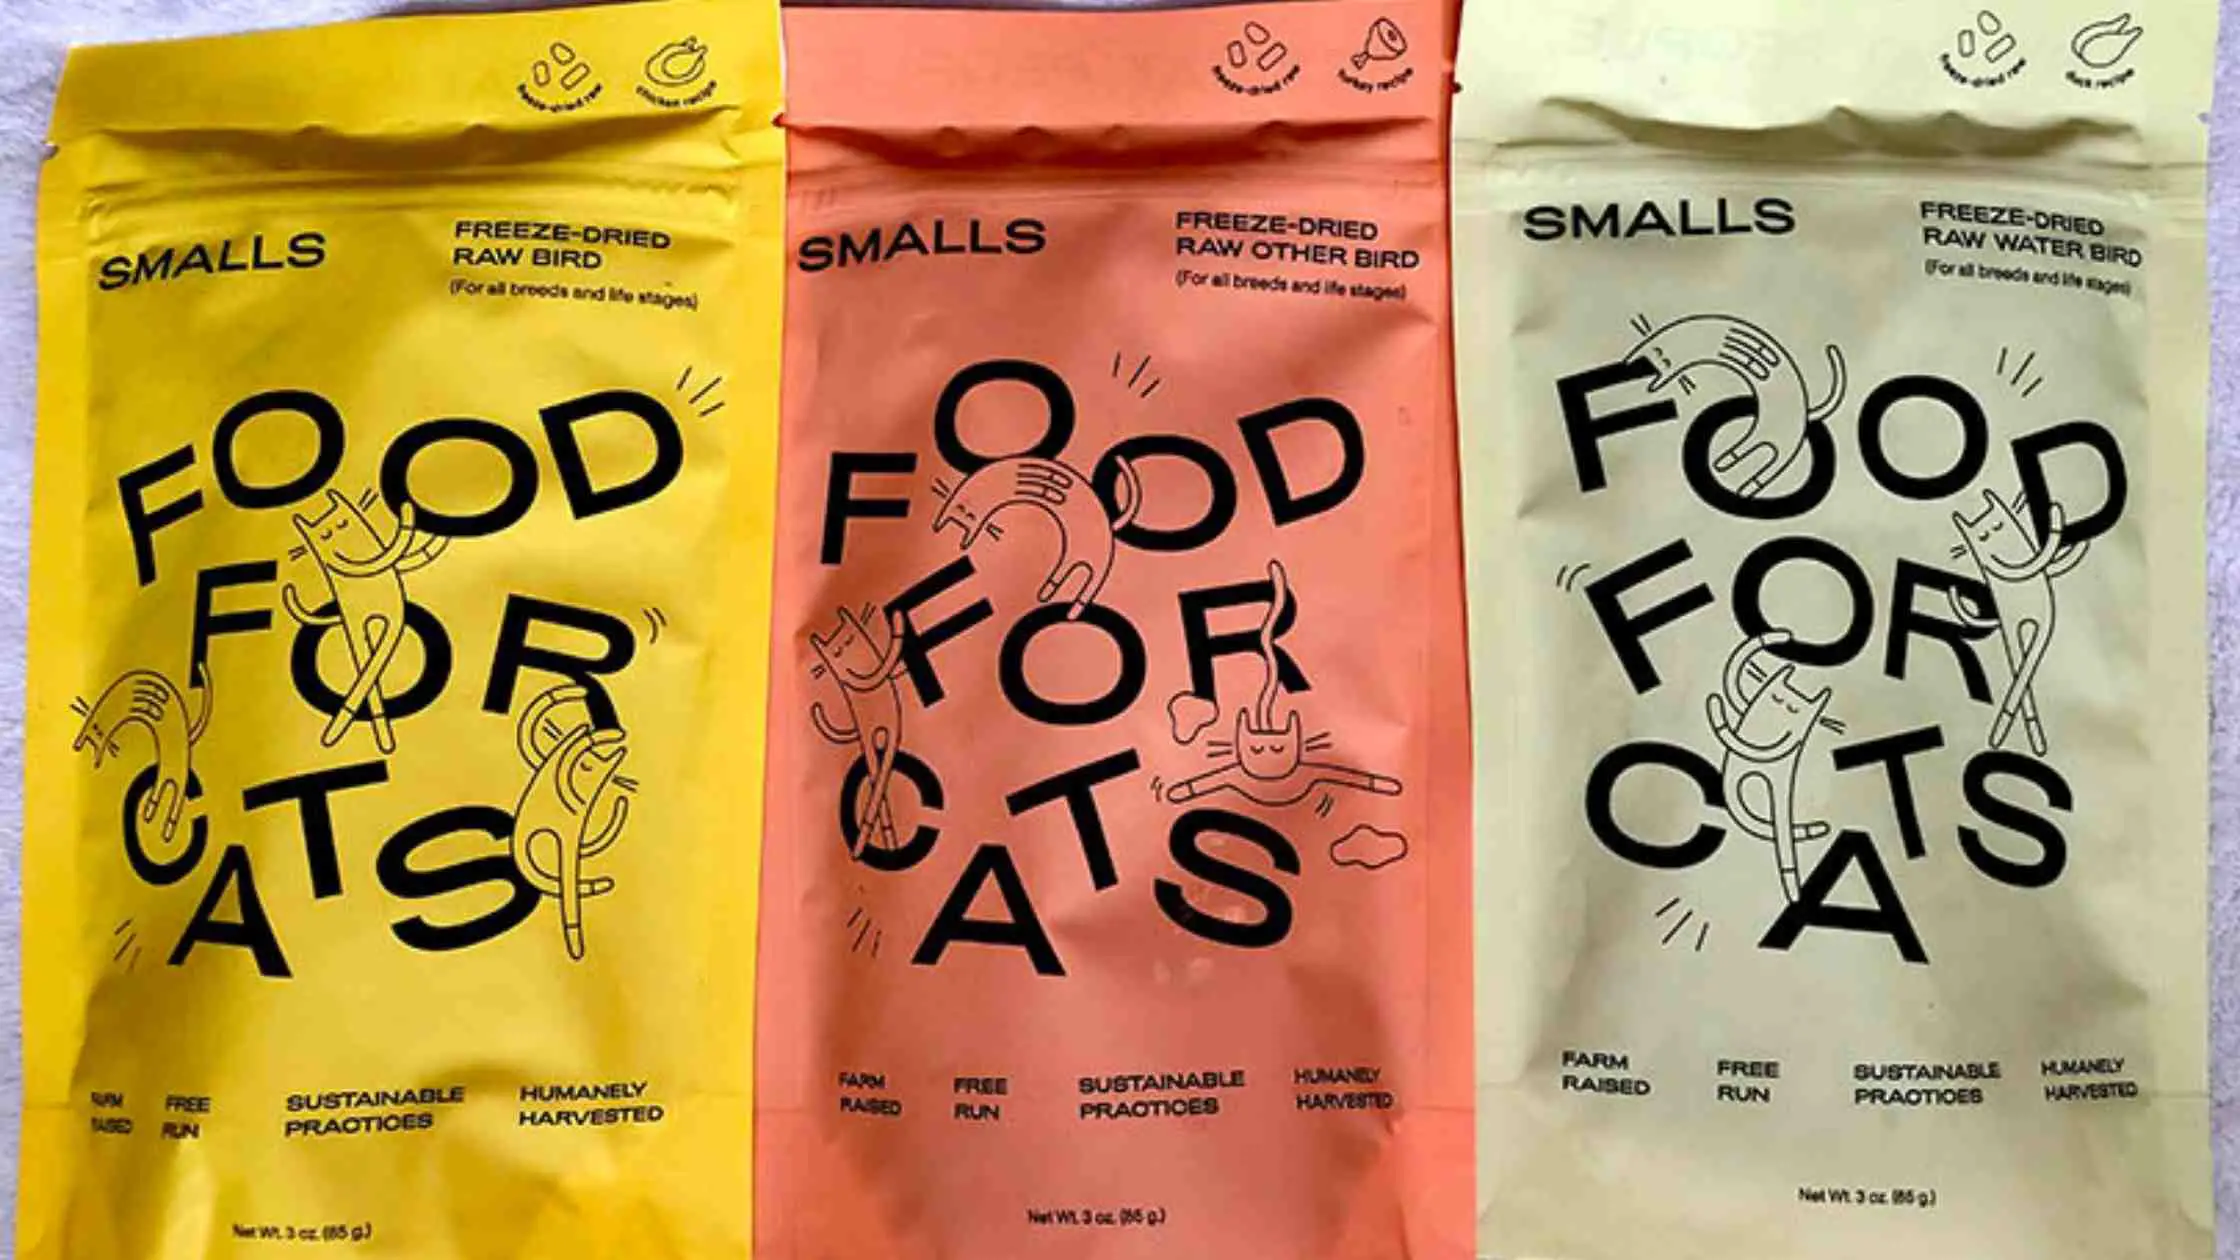 Smalls Cat Food Review